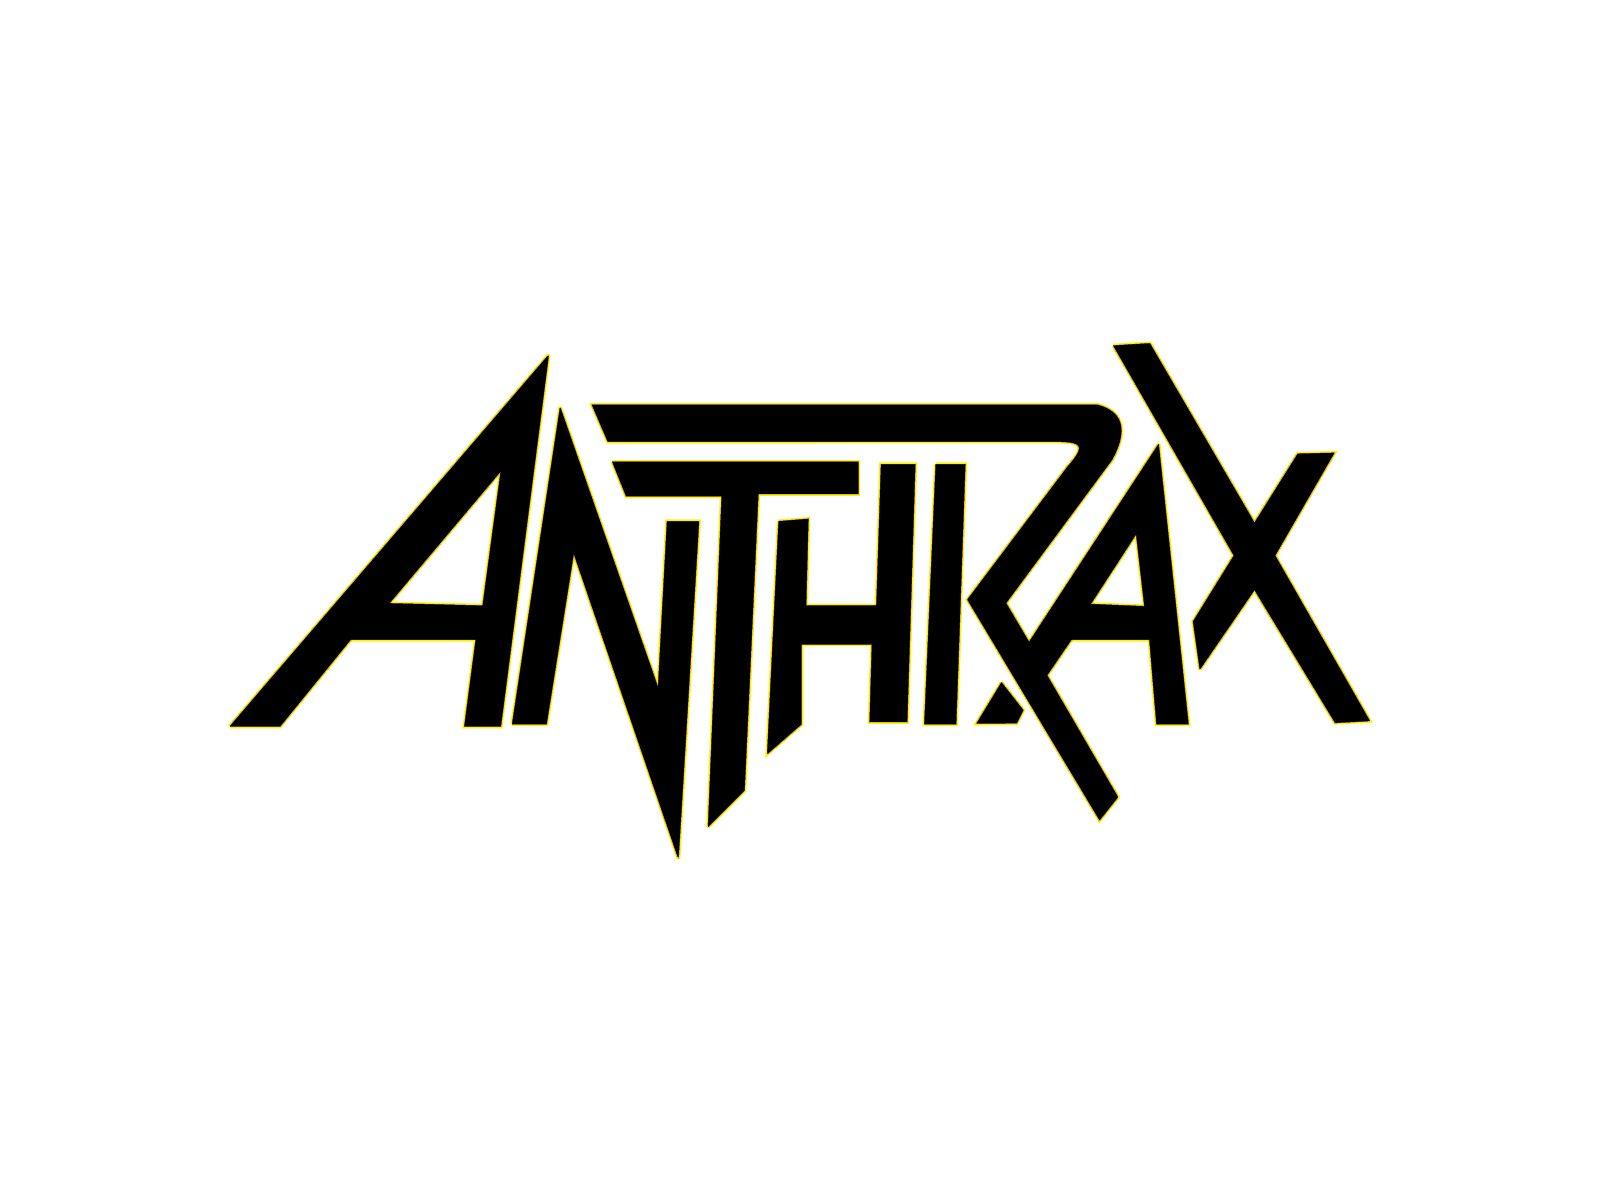 Anthrax Logo - Image - Anthrax logo.jpg | Randomonia Wiki | FANDOM powered by Wikia